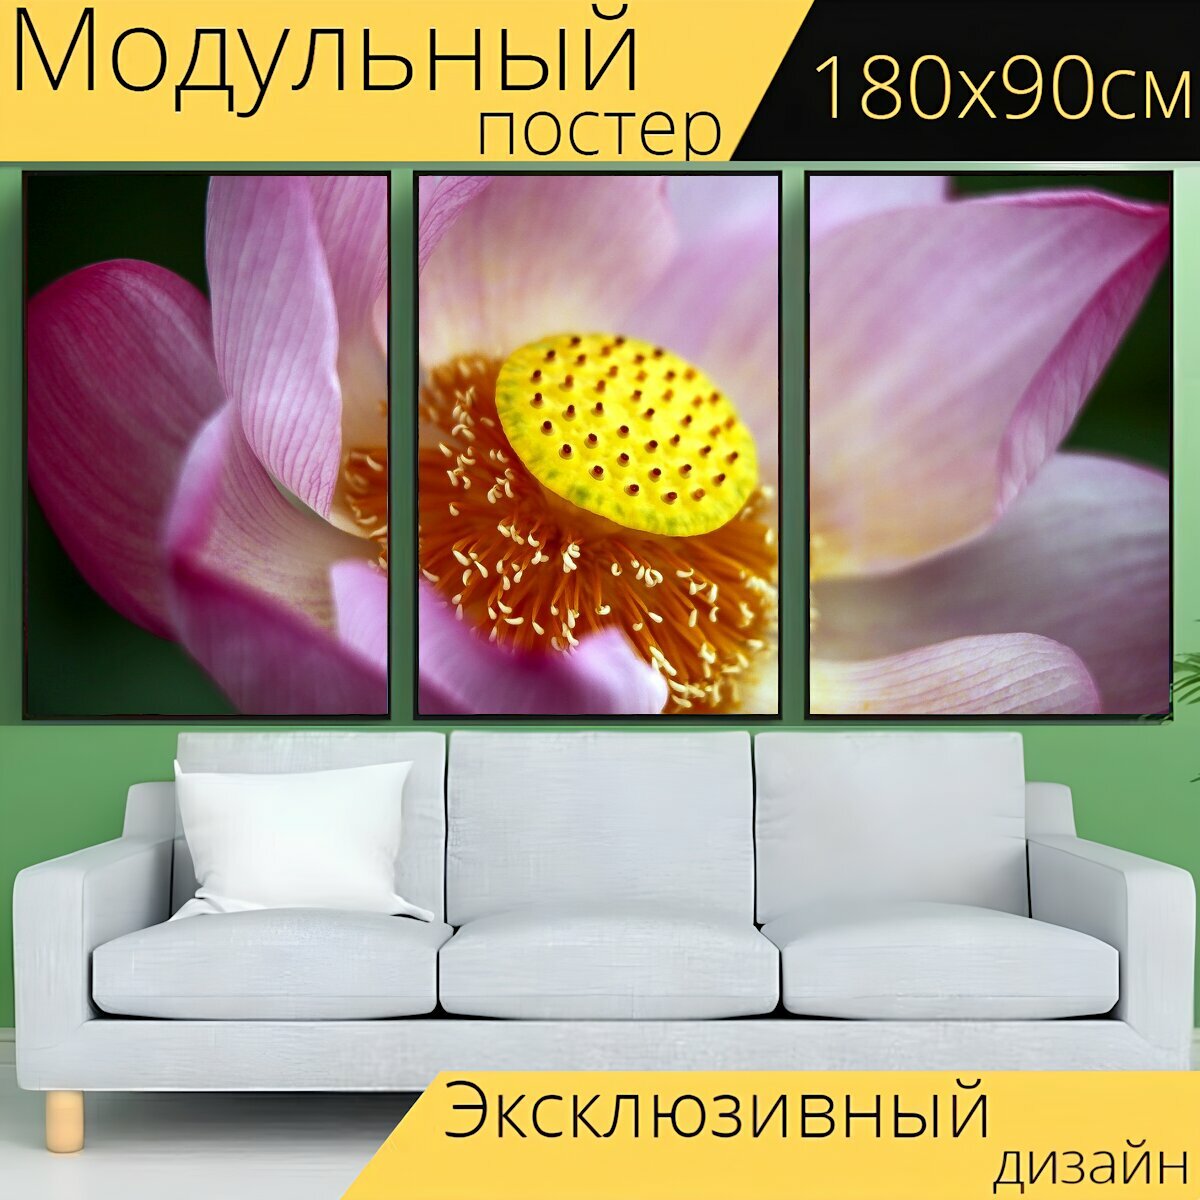 Модульный постер "Цветок лотоса, при смерти, испускать запах" 180 x 90 см. для интерьера